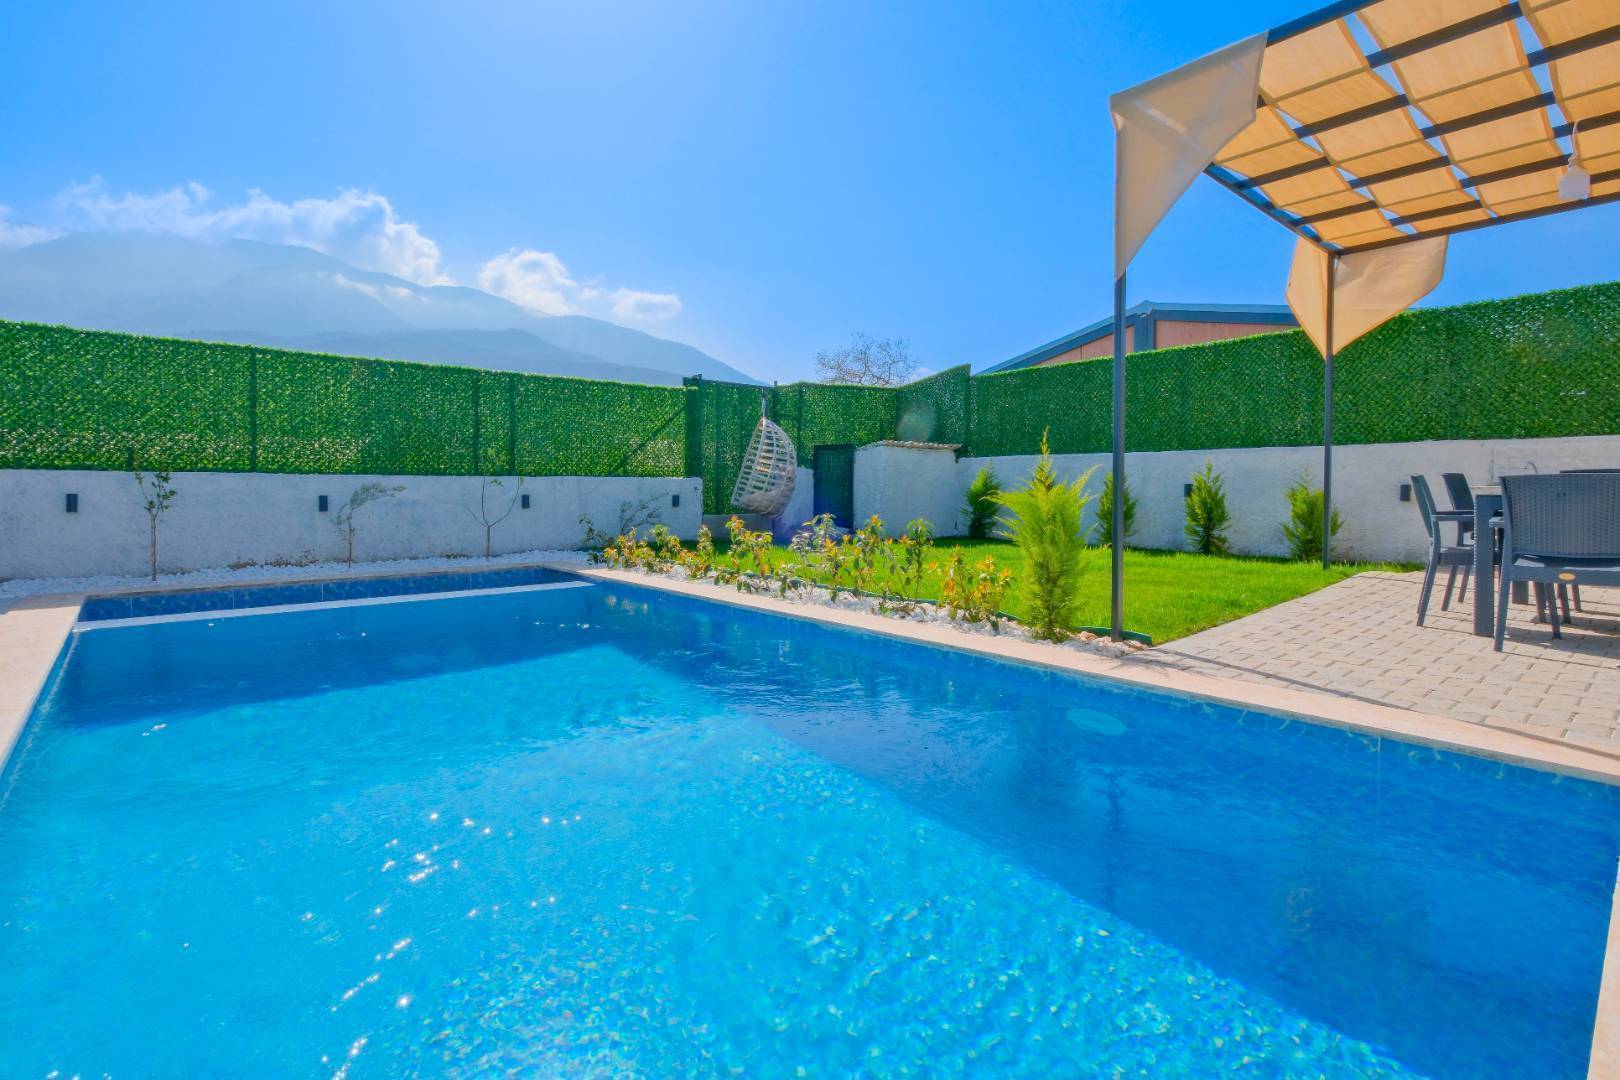 Fethiye Karaçulha'da Korunaklı, Özel Havuzlu, Modern Tasarımlı Villa